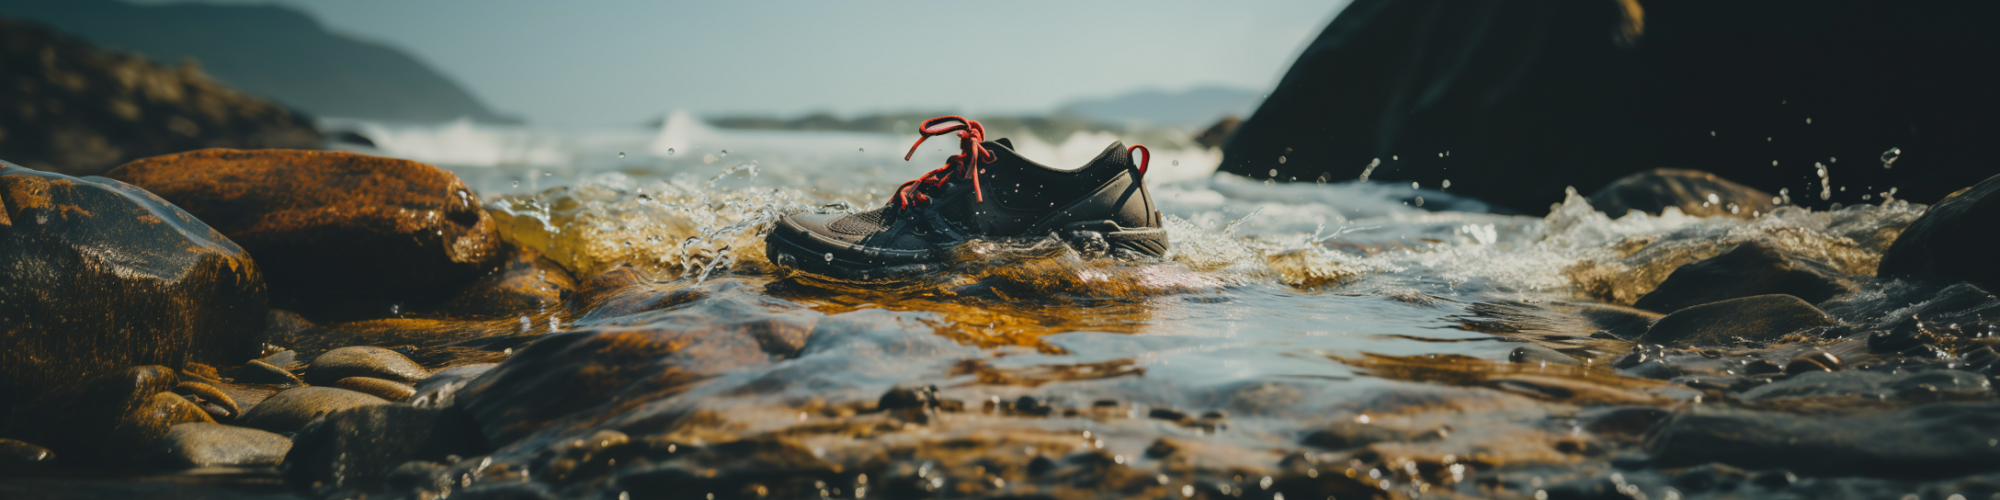 Shoe in water